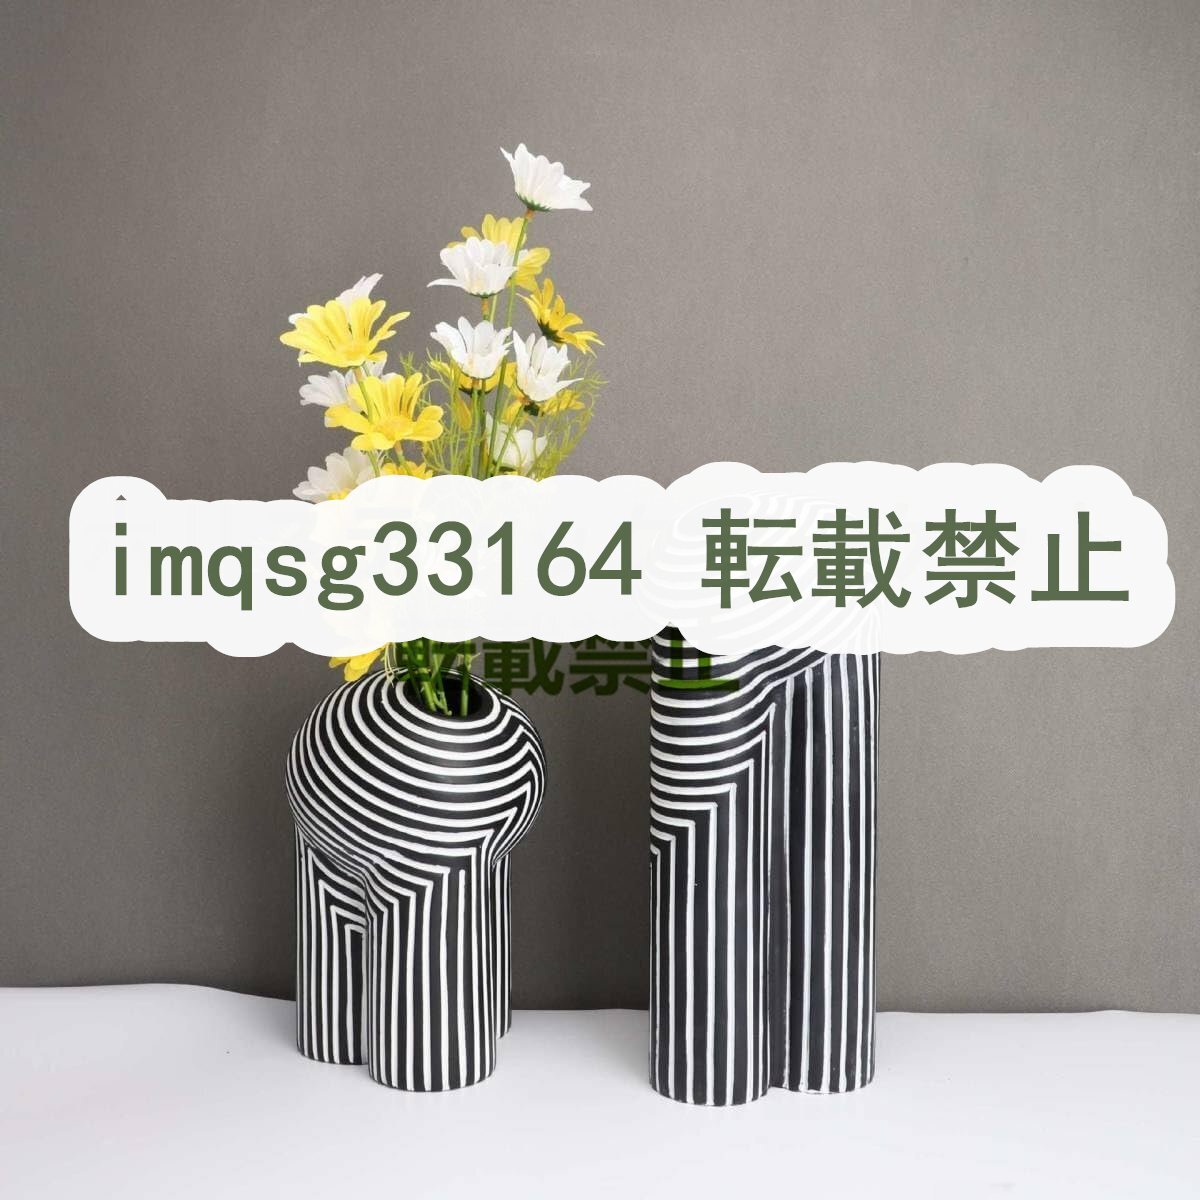 ヨーロピアンスタイルの花瓶 クリエイティブな白黒の縞模様 花器 モダン フラワーベース ブラック ホワイト ストライプ 2サイズ_画像1